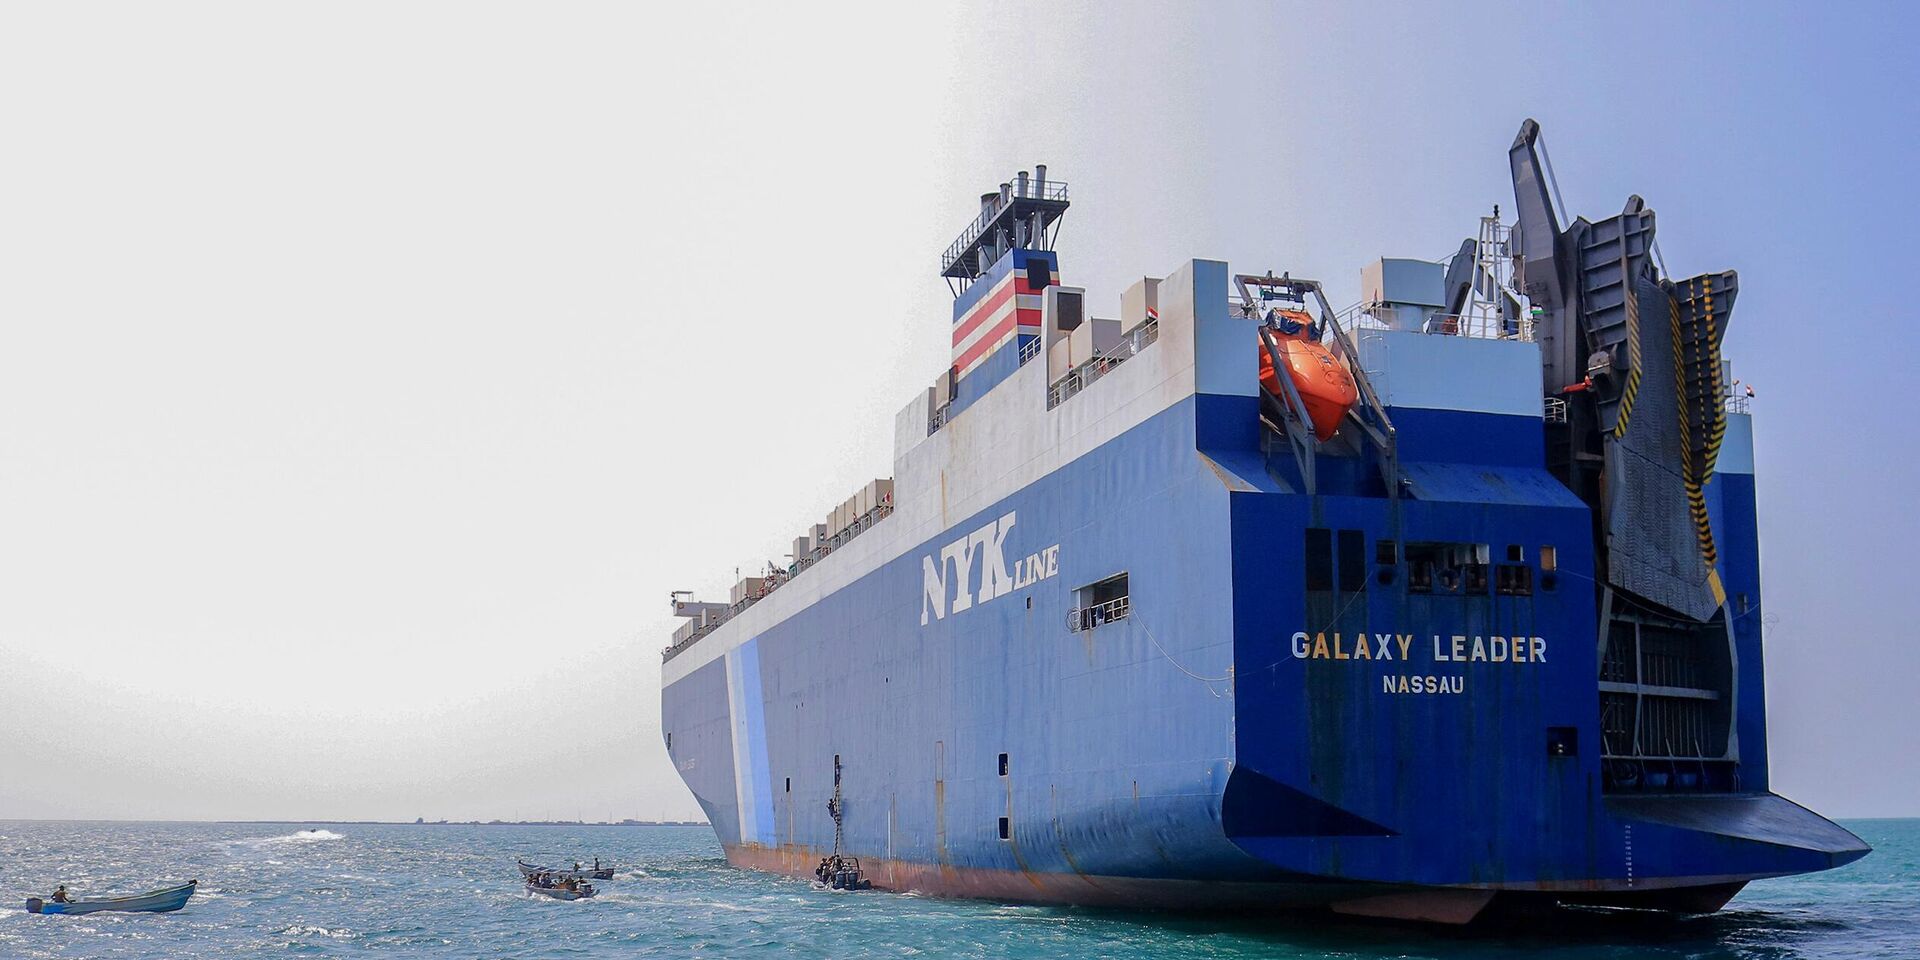 Грузовое судно Galaxy Leader в порте Йемена. 22 ноября 2023 года - ИноСМИ, 1920, 20.12.2023